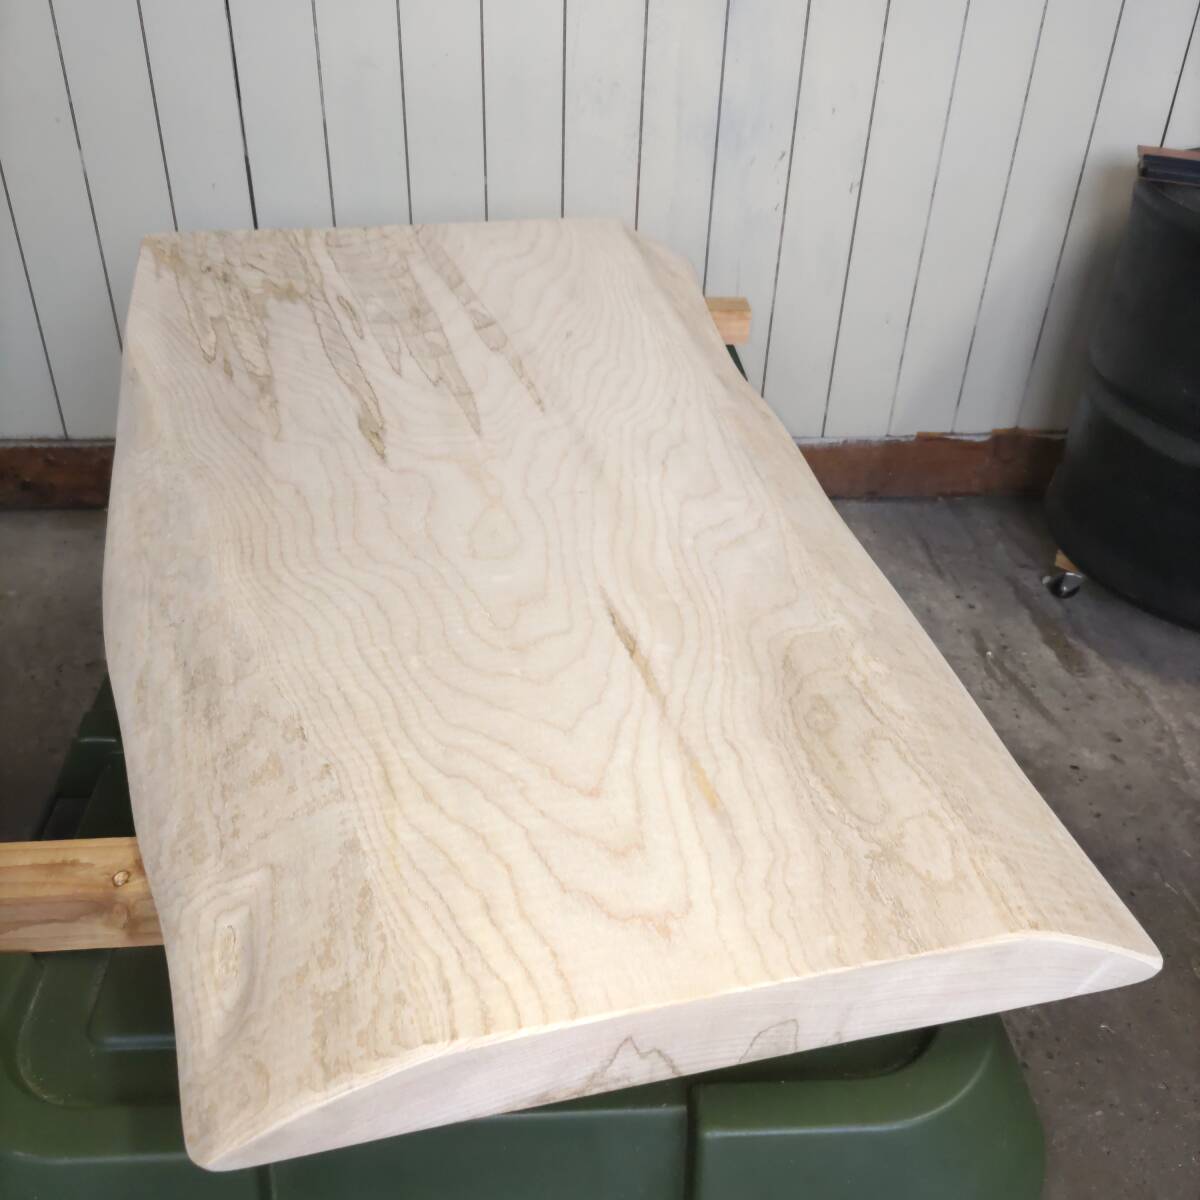 イタヤカエデ 楓 約長900幅380〜500厚45ミリ 製材後約半年 耳付き板 一枚板 天然木 無垢 未乾燥 花台 多肉棚 テーブル板の画像2